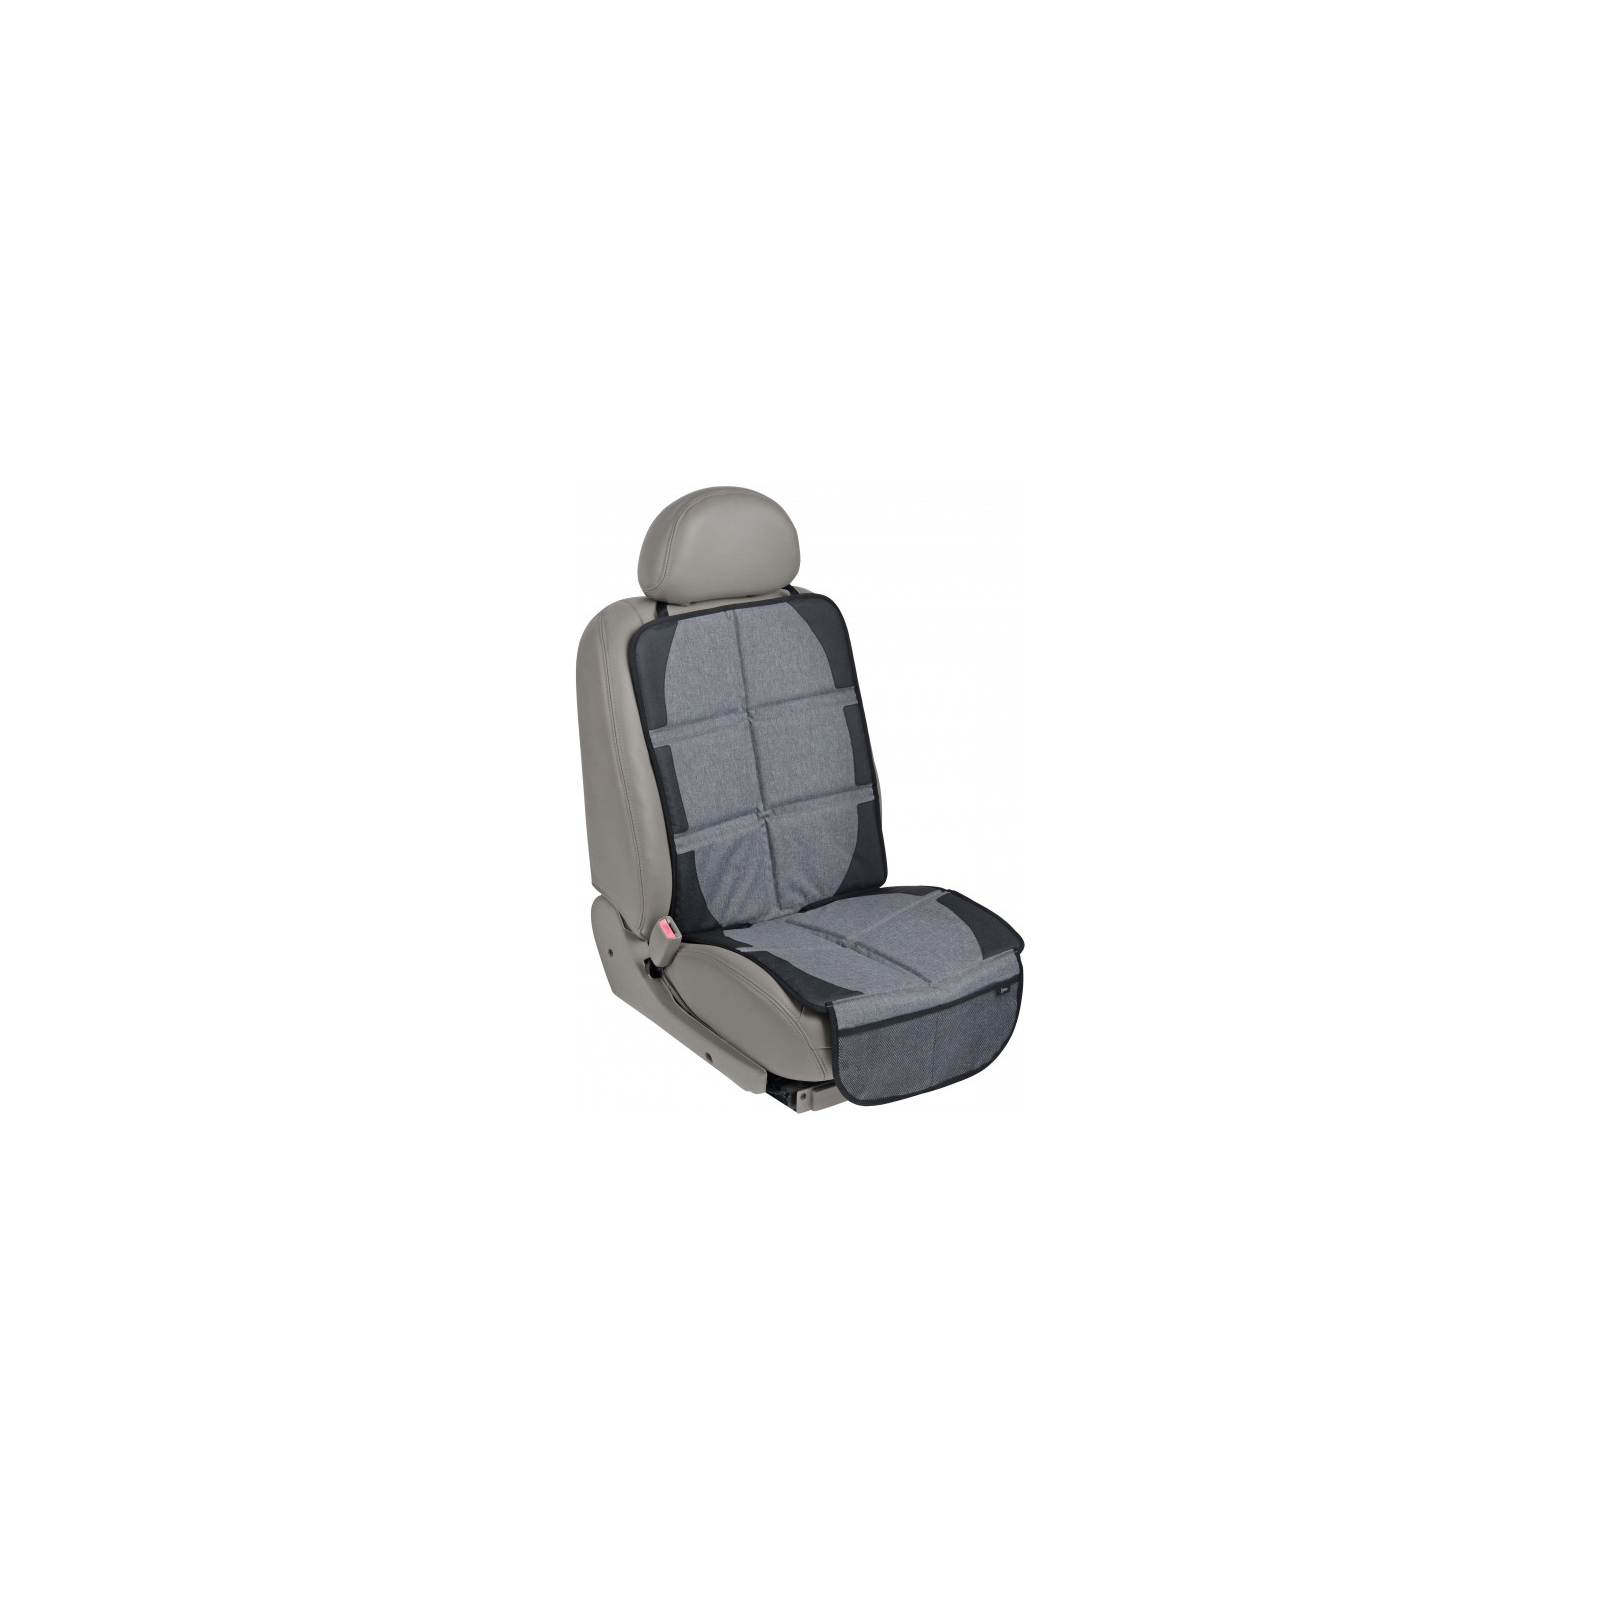 Захисний килимок Bugs для автомобільного сидіння (6901319001044)